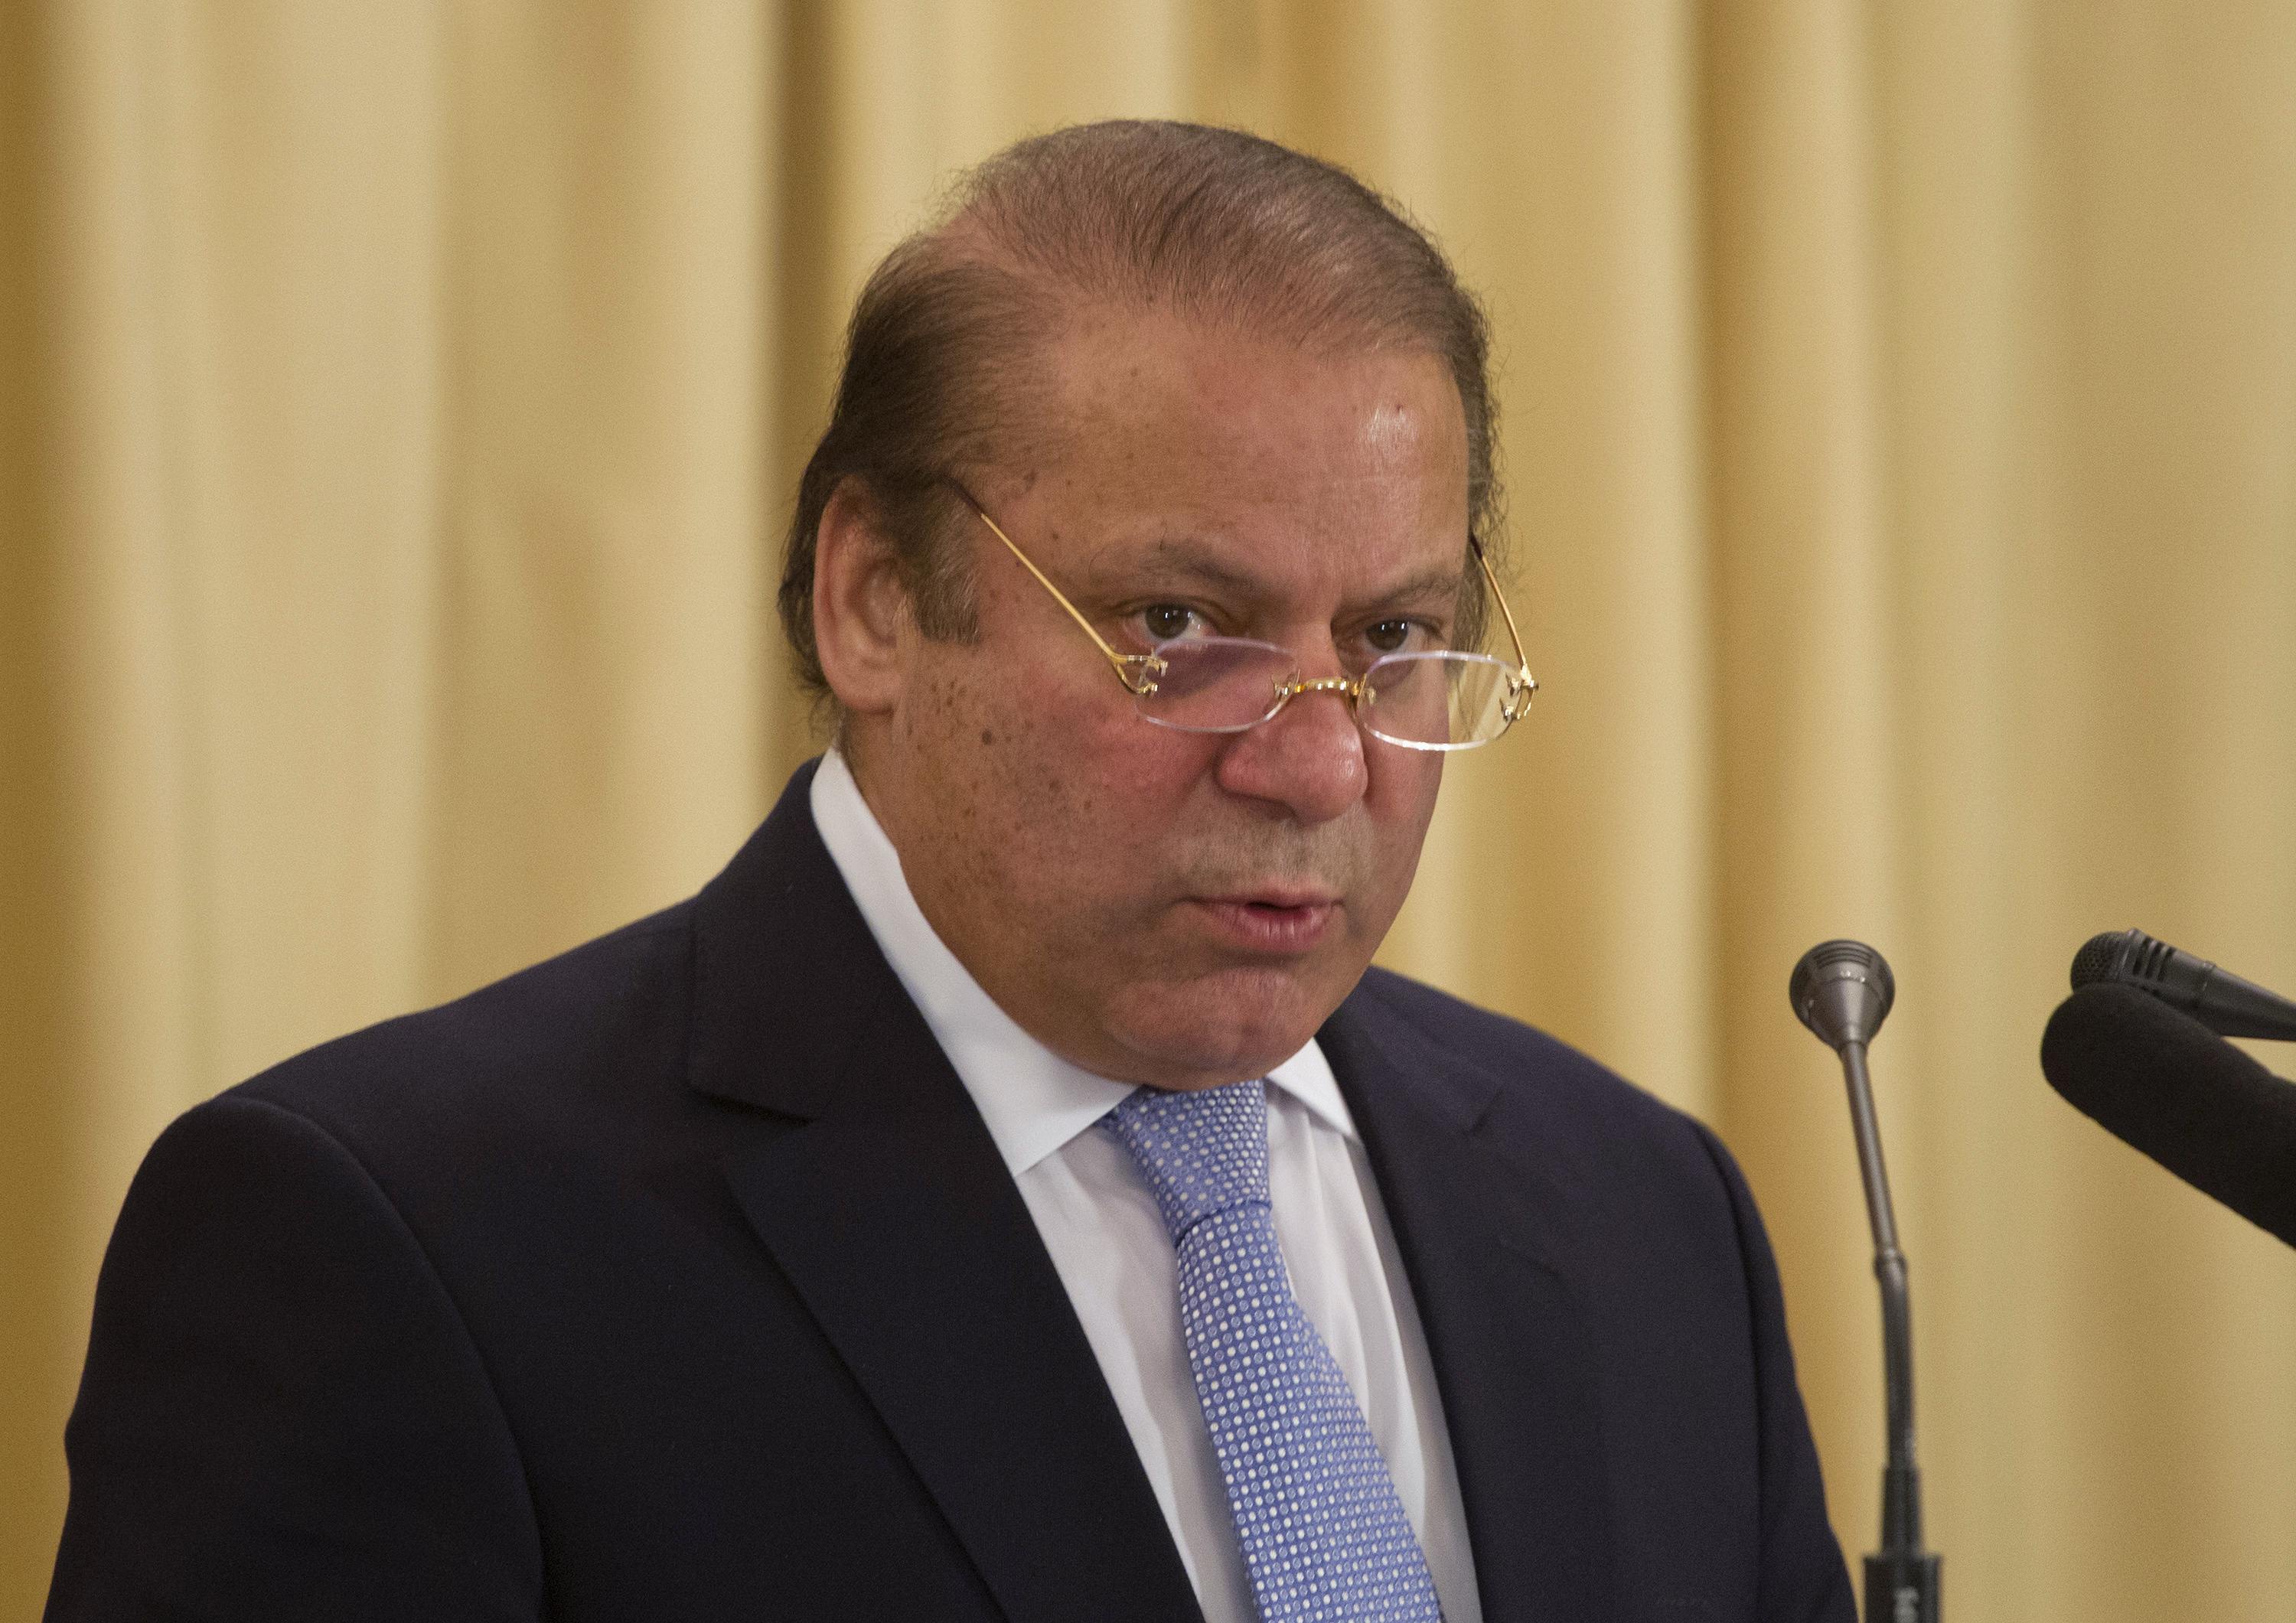 Pakistan on edge ahead of SC verdict on Sharif